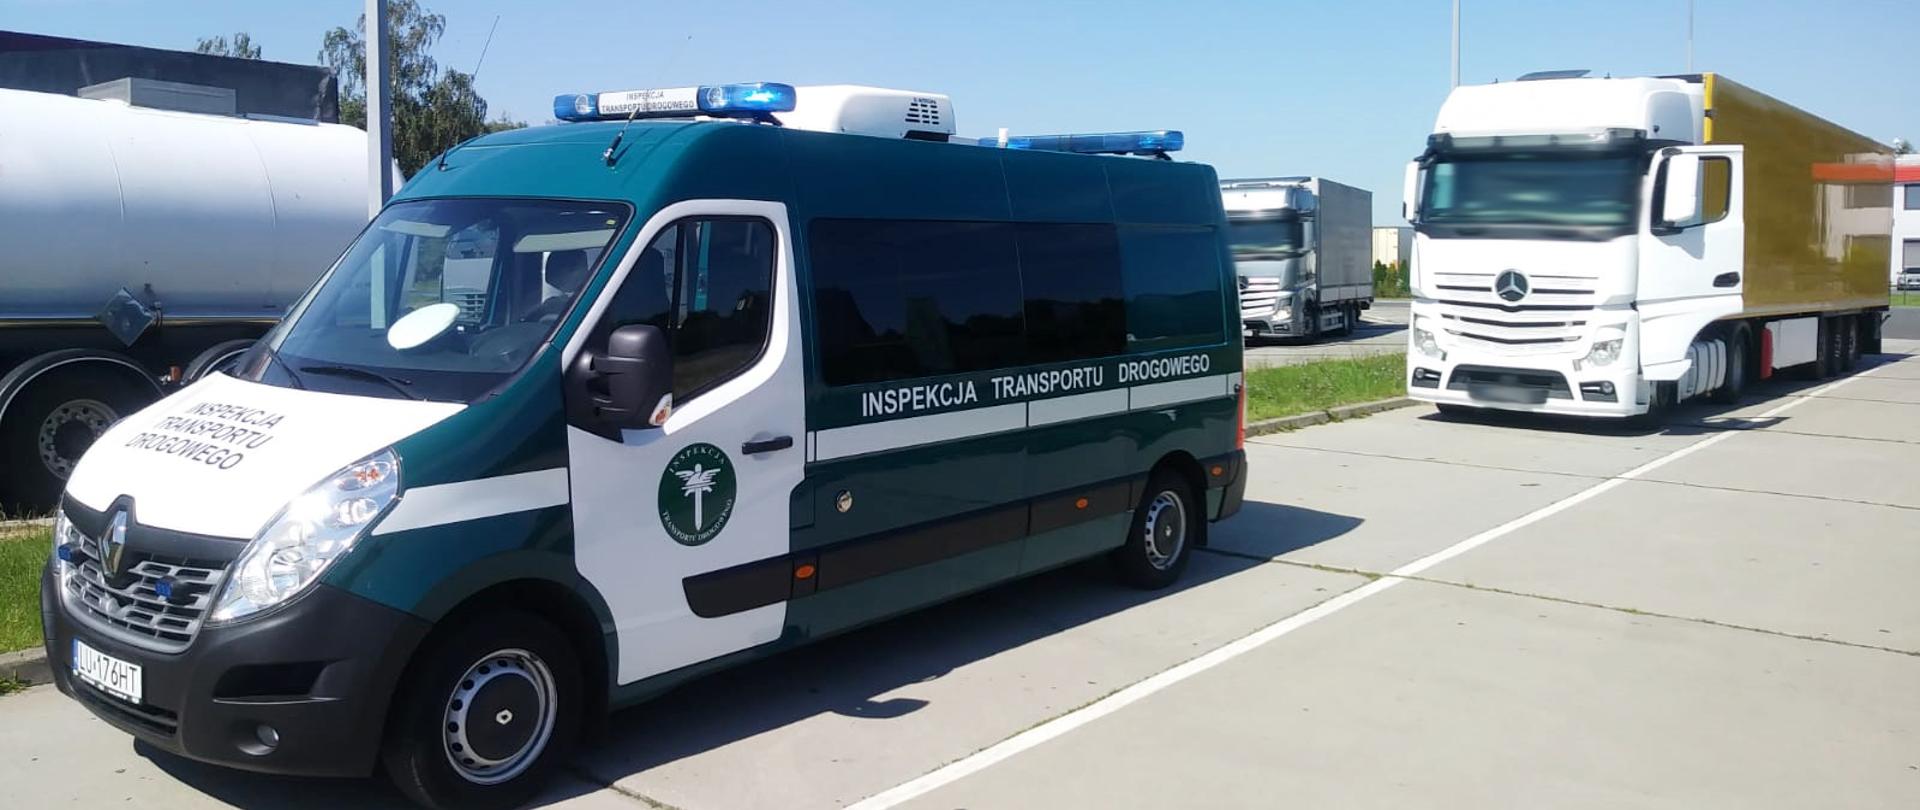 Kontrola inspektorów lubelskiej ITD. Po lewej inspekcyjny furgon, po prawej skontrolowana ciężarówka. Za nimi inne pojazdy ciężarowe.